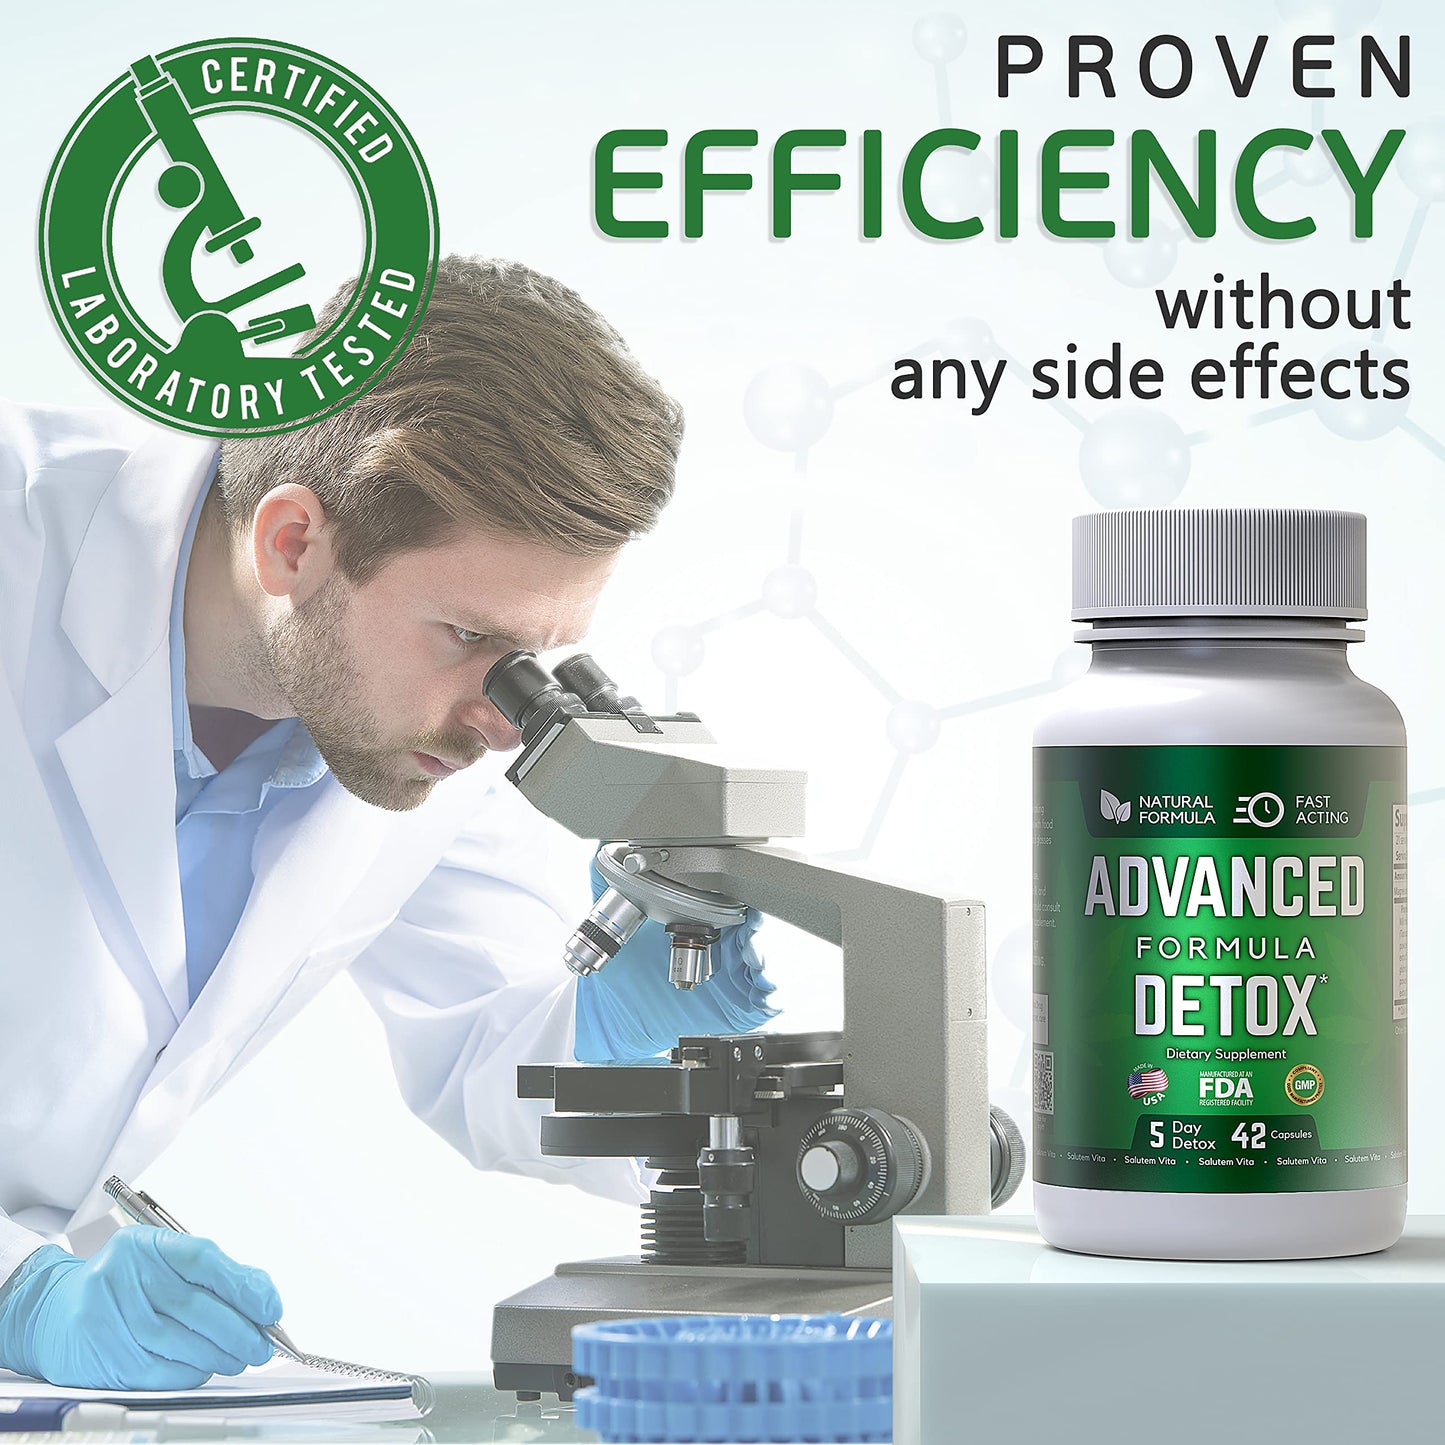 Salutem Vita Advance Formula Detox - Detox Kit - Advanced Formula Detox 3 pc, Multi Panel Test Cup 4pc - Supplement for Toxin Removal